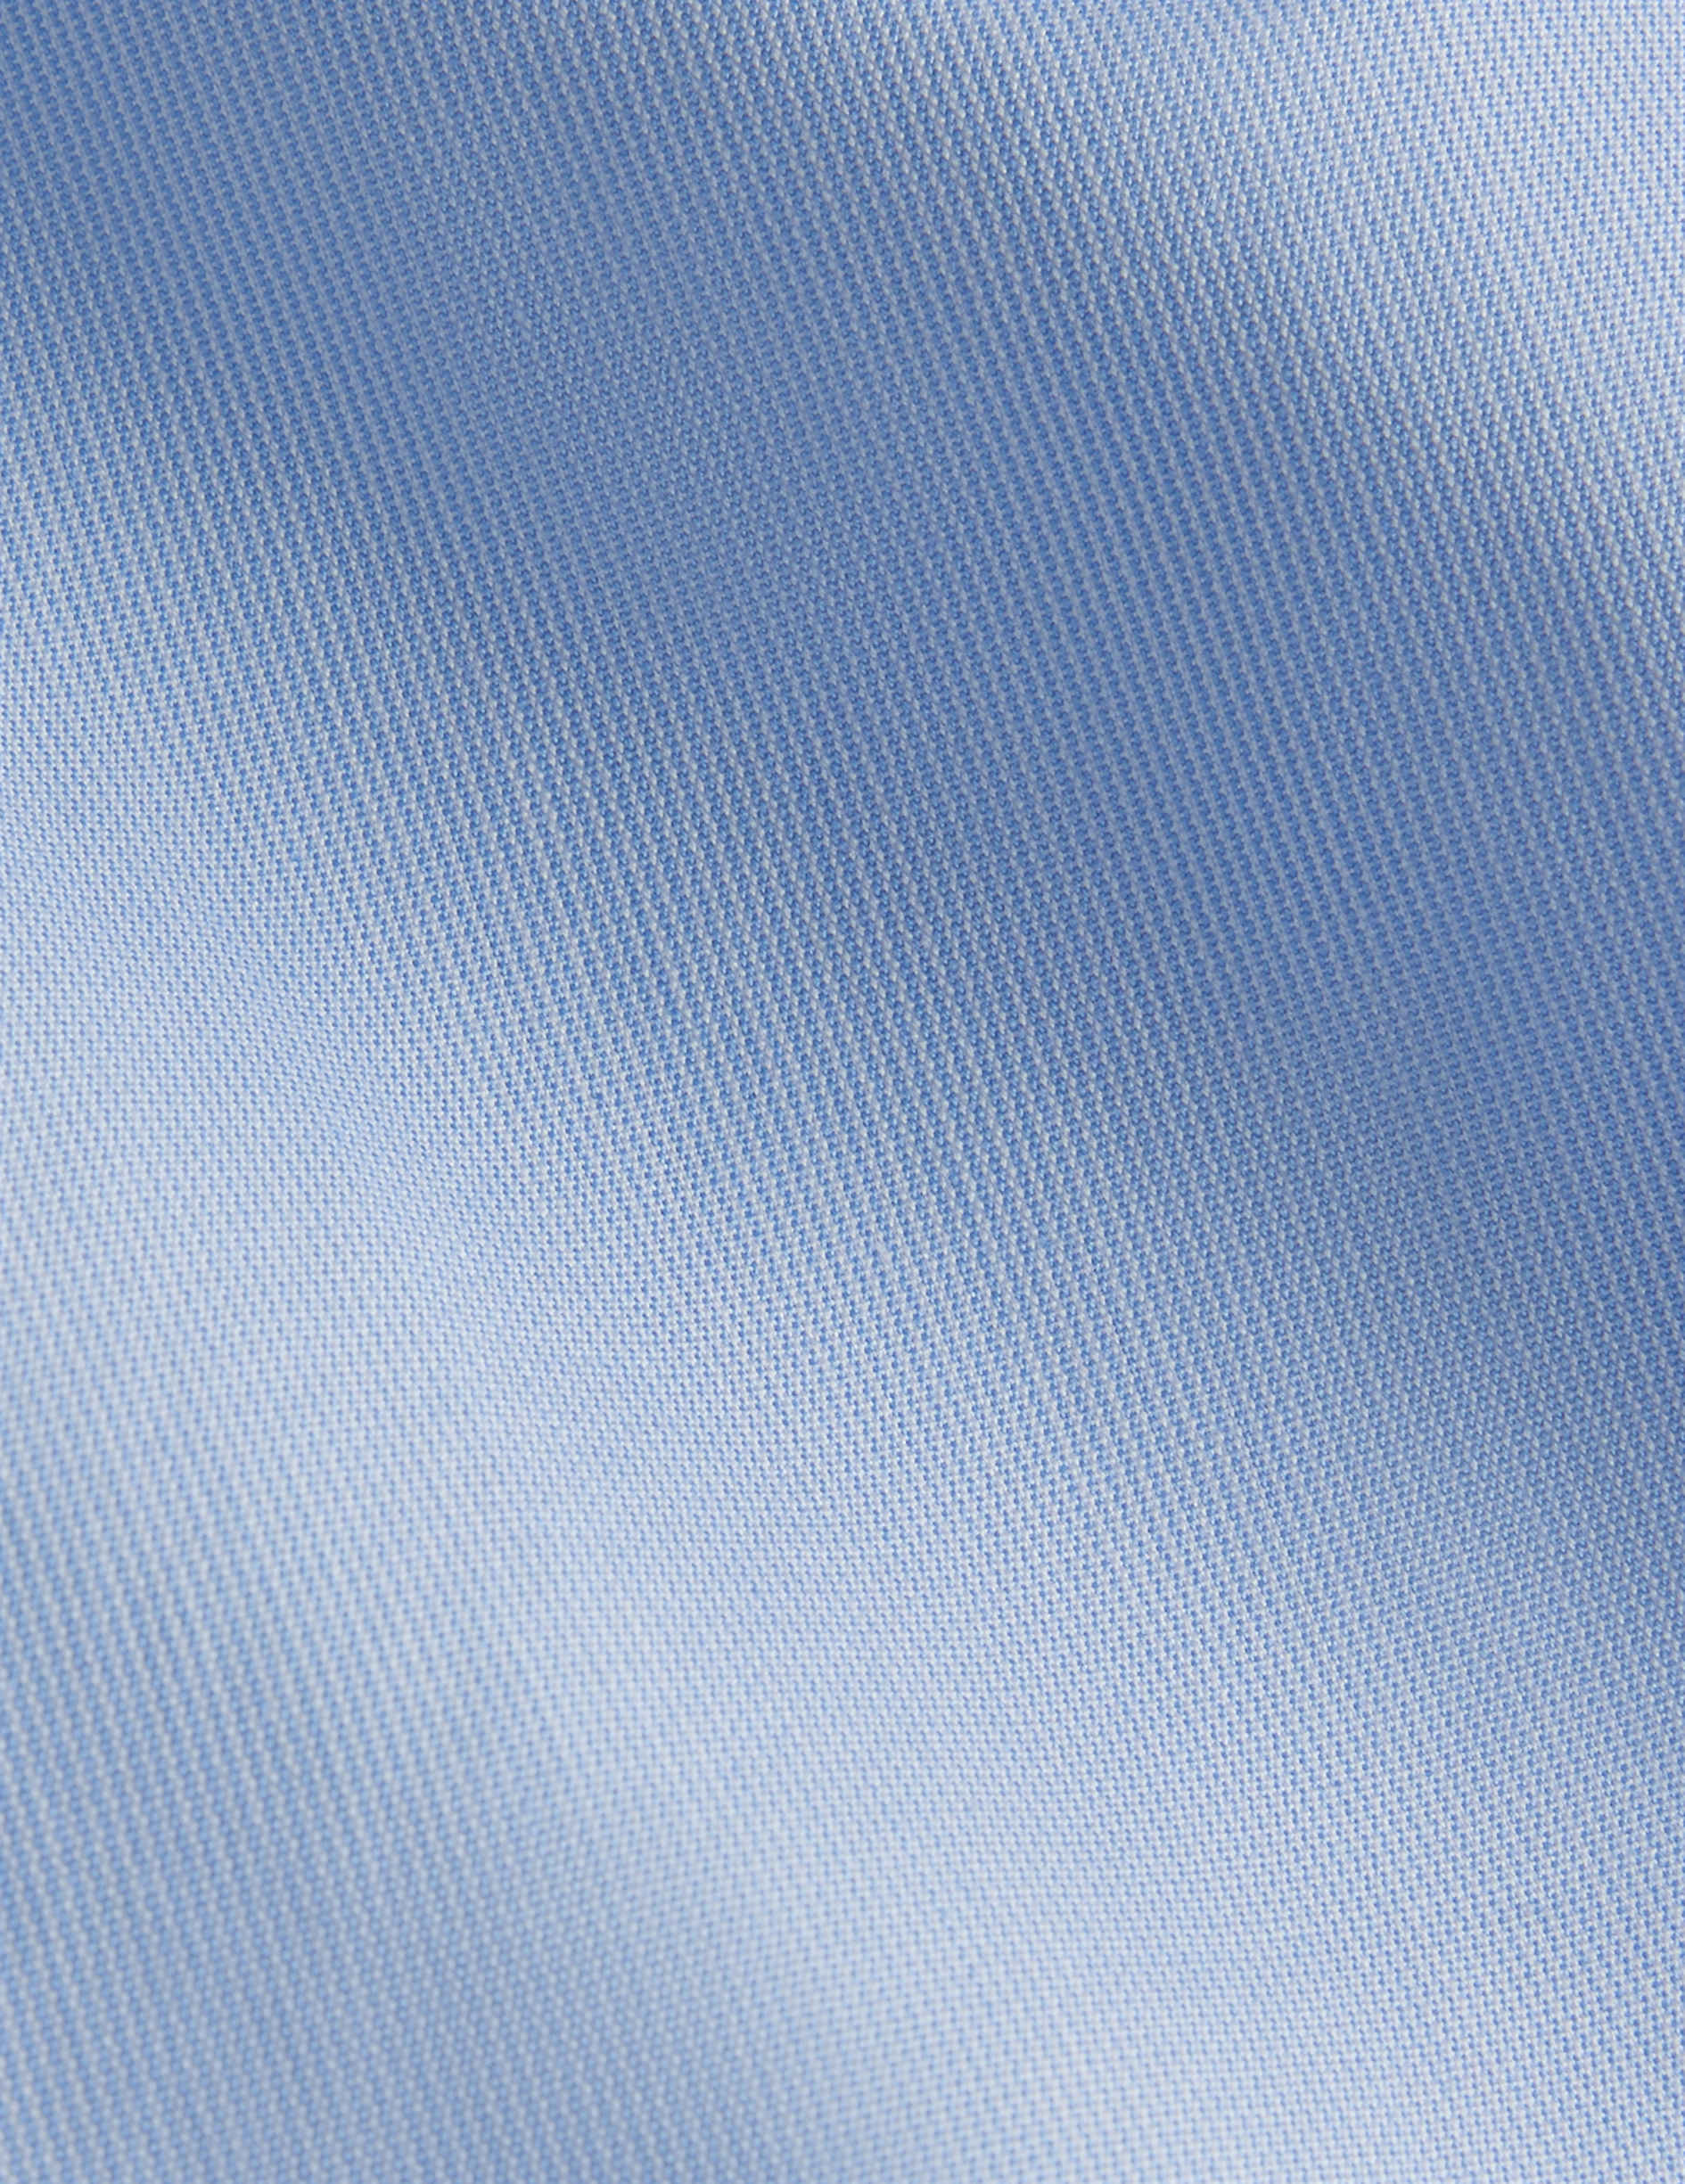 Chemise Semi-ajustée rayée bleue - Popeline - Col Italien